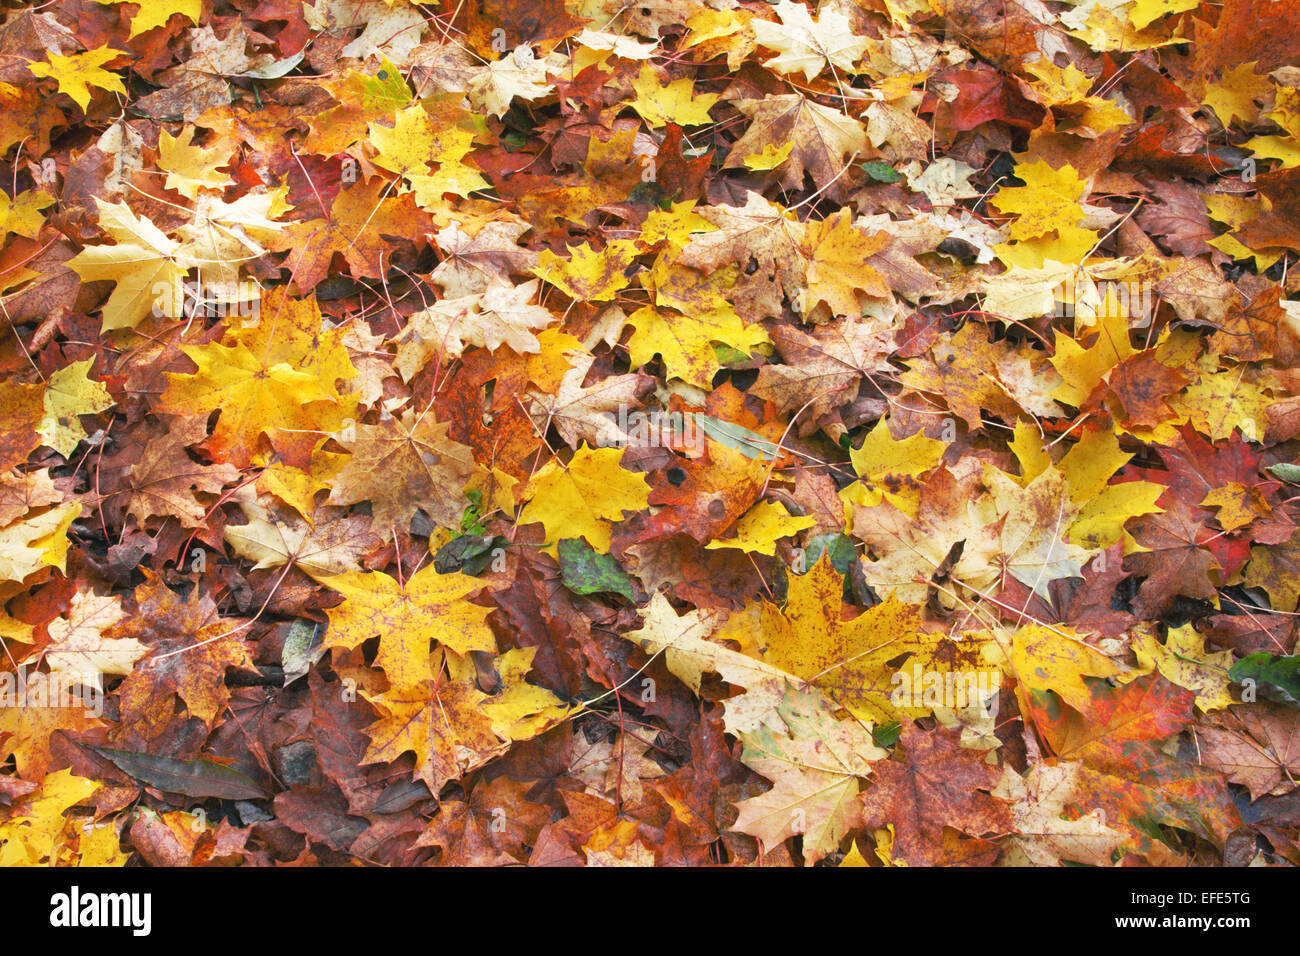 fallen autumn leaves Stock Photo